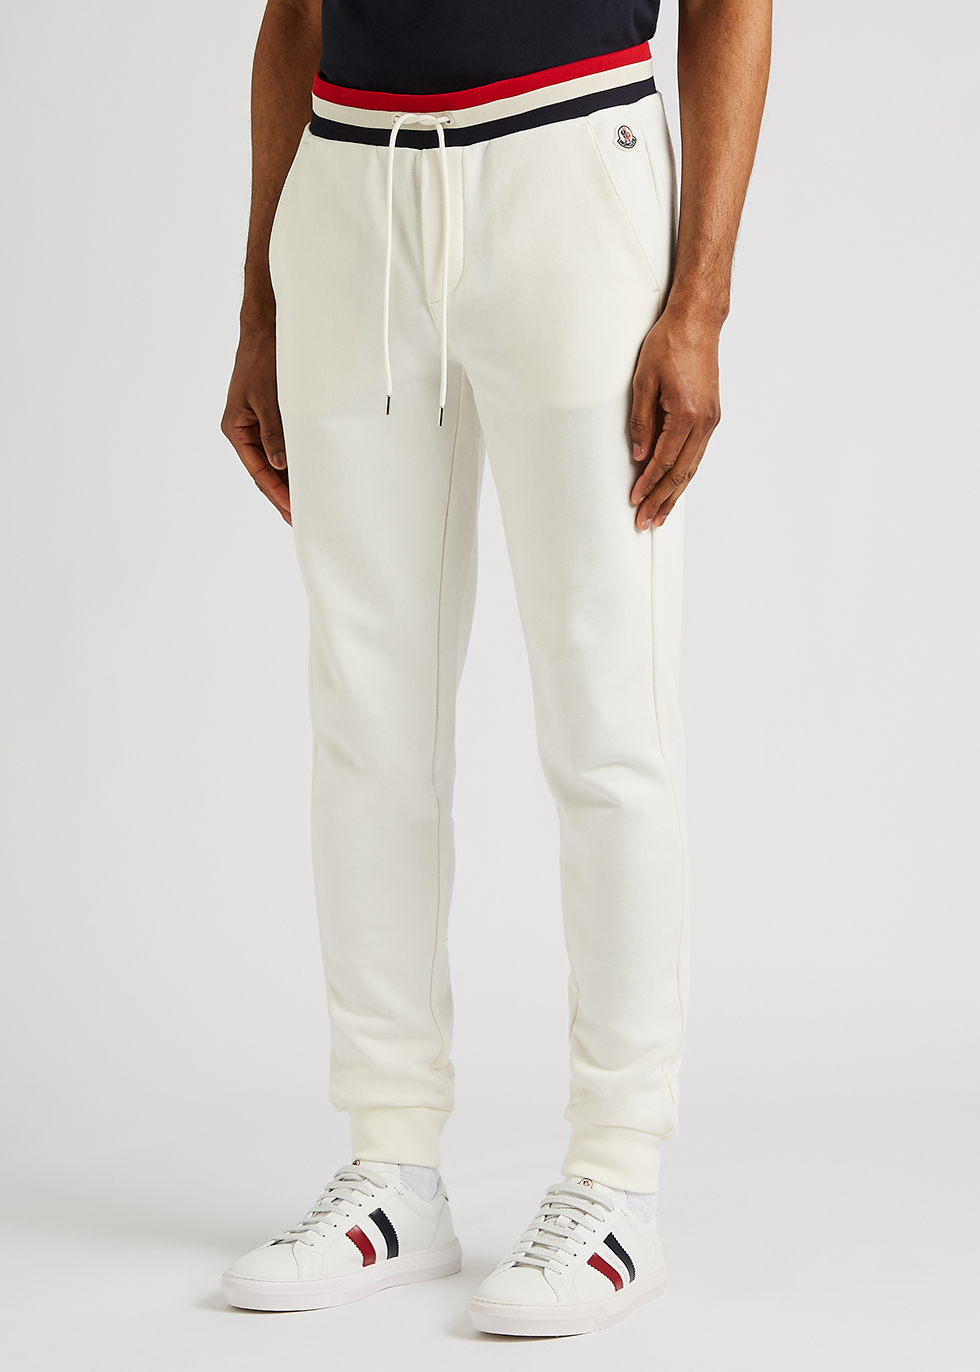 Moncler White cotton sweatpants - Harvey Nichols